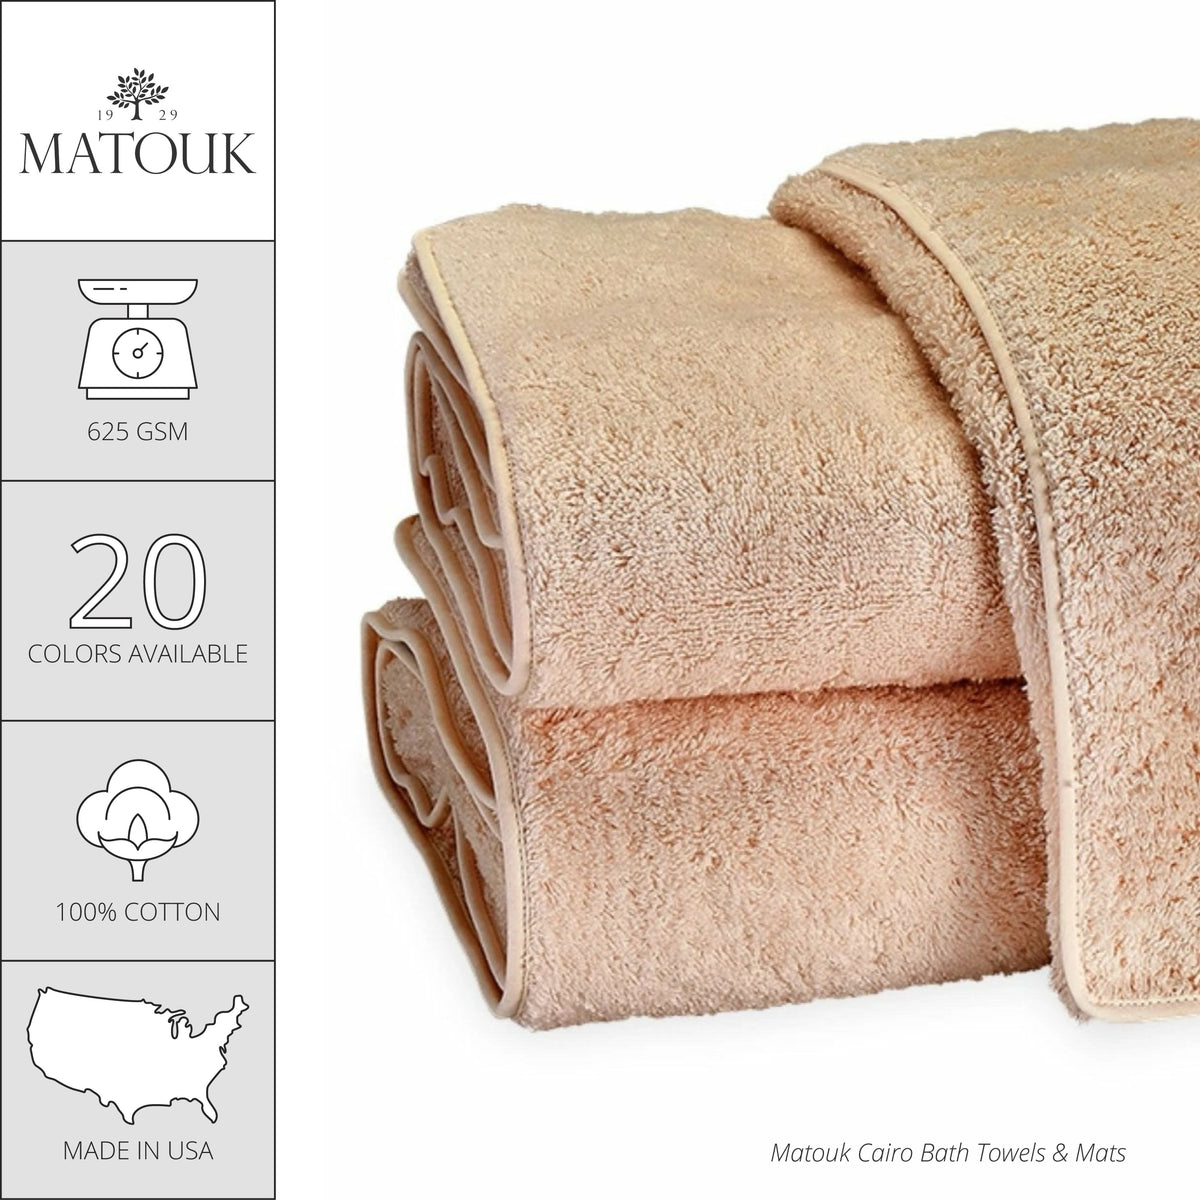 Matouk Cairo Bath Towels and Mats - Blush/Blush